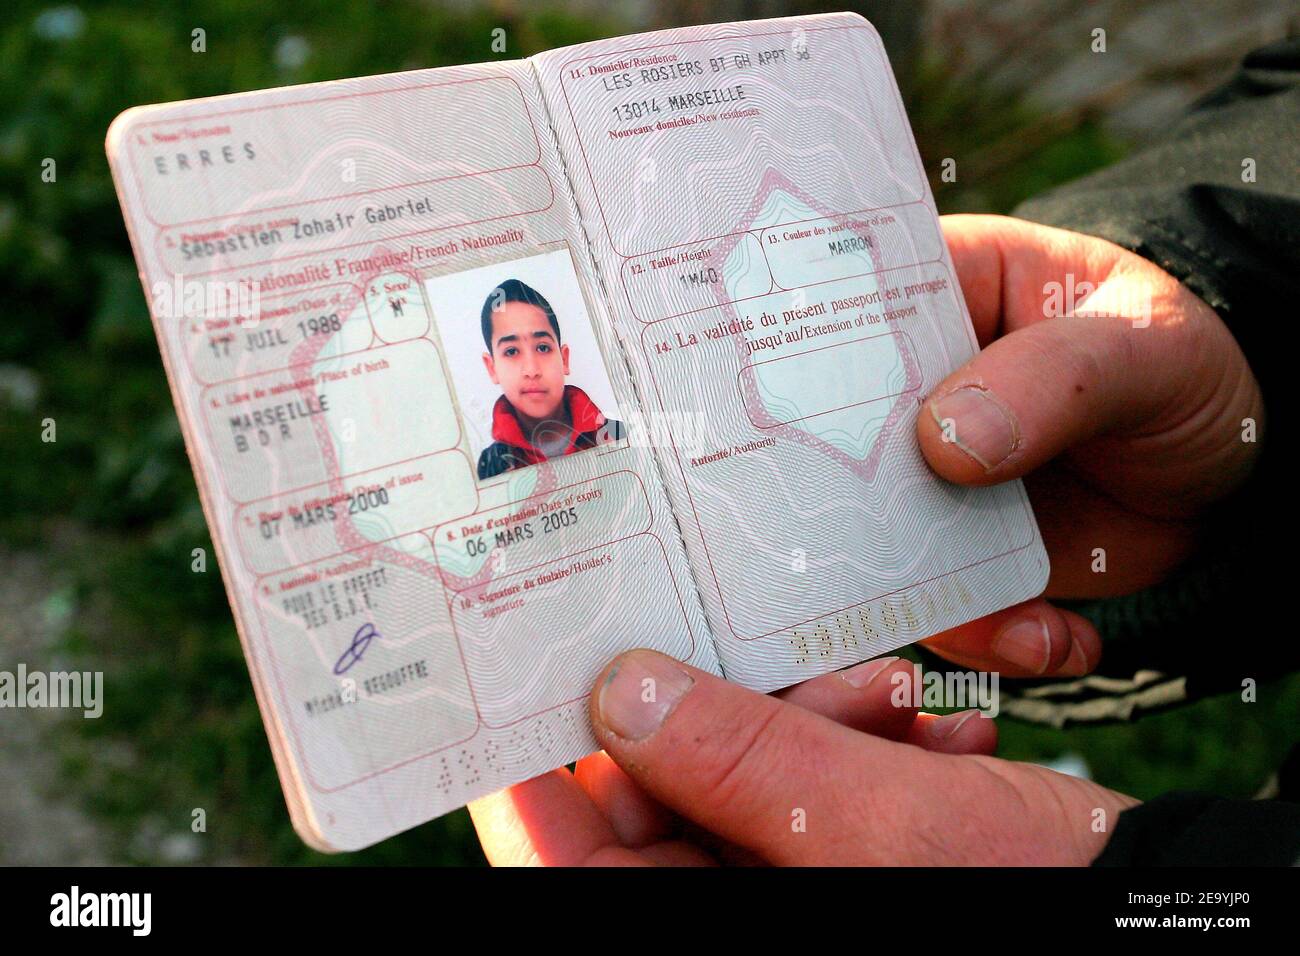 Hafez Erres mostra il passaporto di suo figlio Sebastien, soprannome 'Boubou', 16, che è stato ucciso da un commerciante di droga vicino alla sua residenza 'Les Rosiers', a Marsiglia, Francia meridionale, il 3 gennaio 2005. Dopo una breve passeggiata, perse coscienza e morì la sera all'ospedale militare di Laveran. Foto di Gerald Holubowicz/ABACA Foto Stock